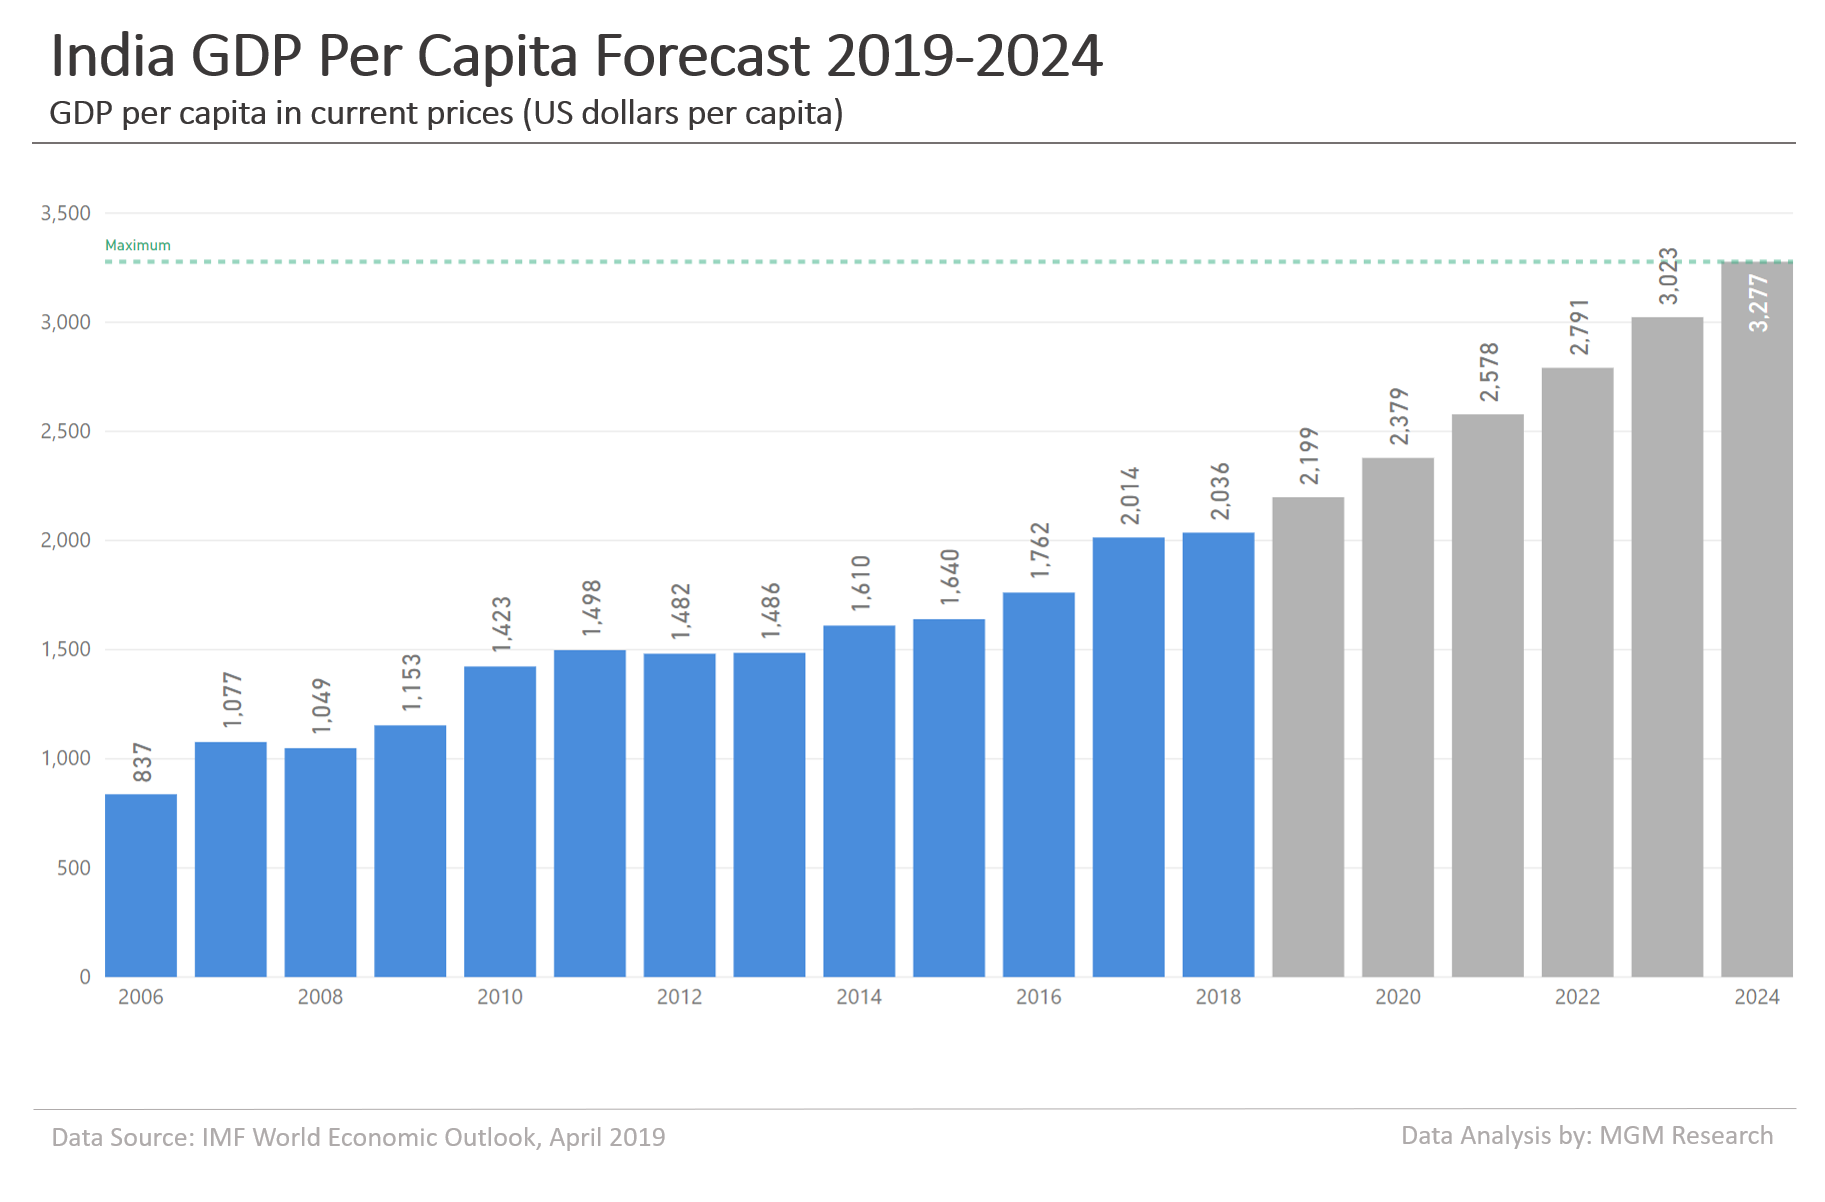 India GDP per capita forecast 2019-2024